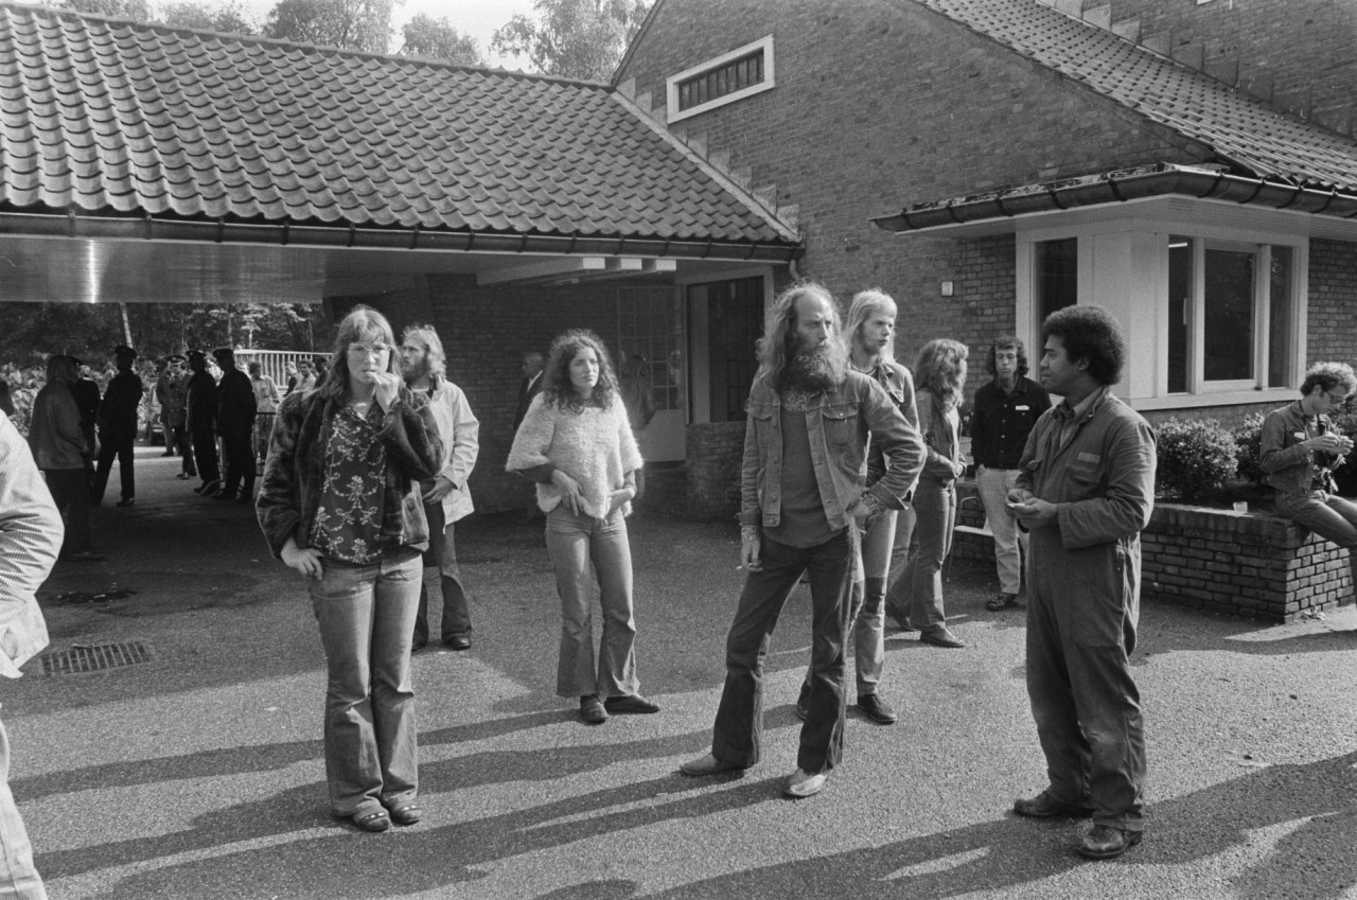 Op 3 juli 1974 werd het Lorentz paviljoen van Dennendal ontruimd